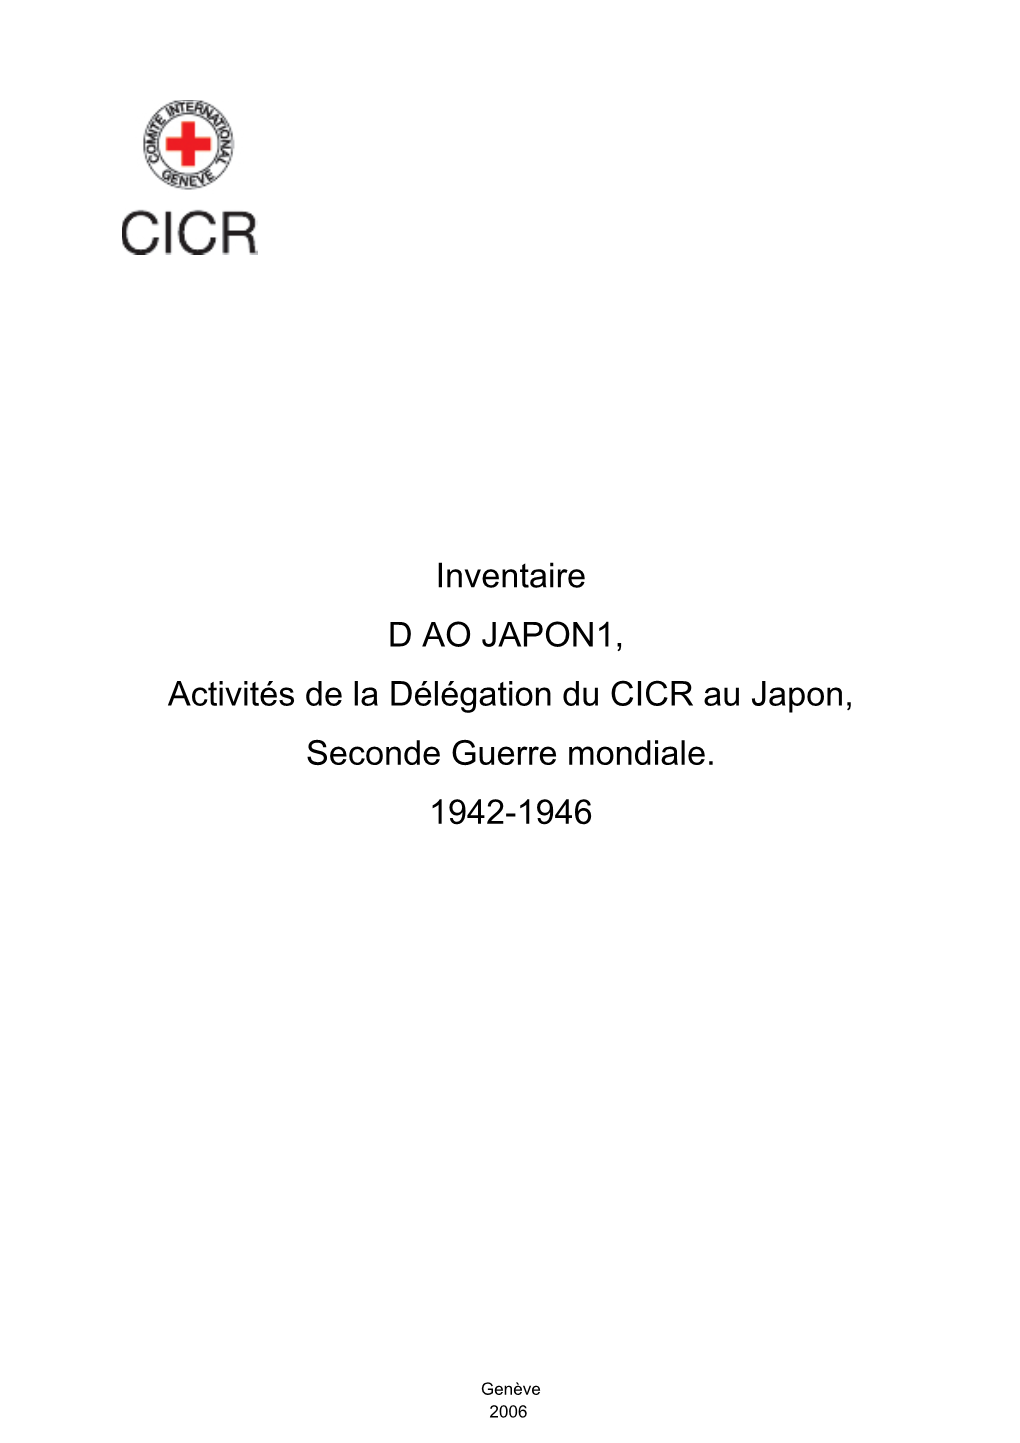 Inventaire D AO JAPON1, Activités De La Délégation Du CICR Au Japon, Seconde Guerre Mondiale. 1942-1946